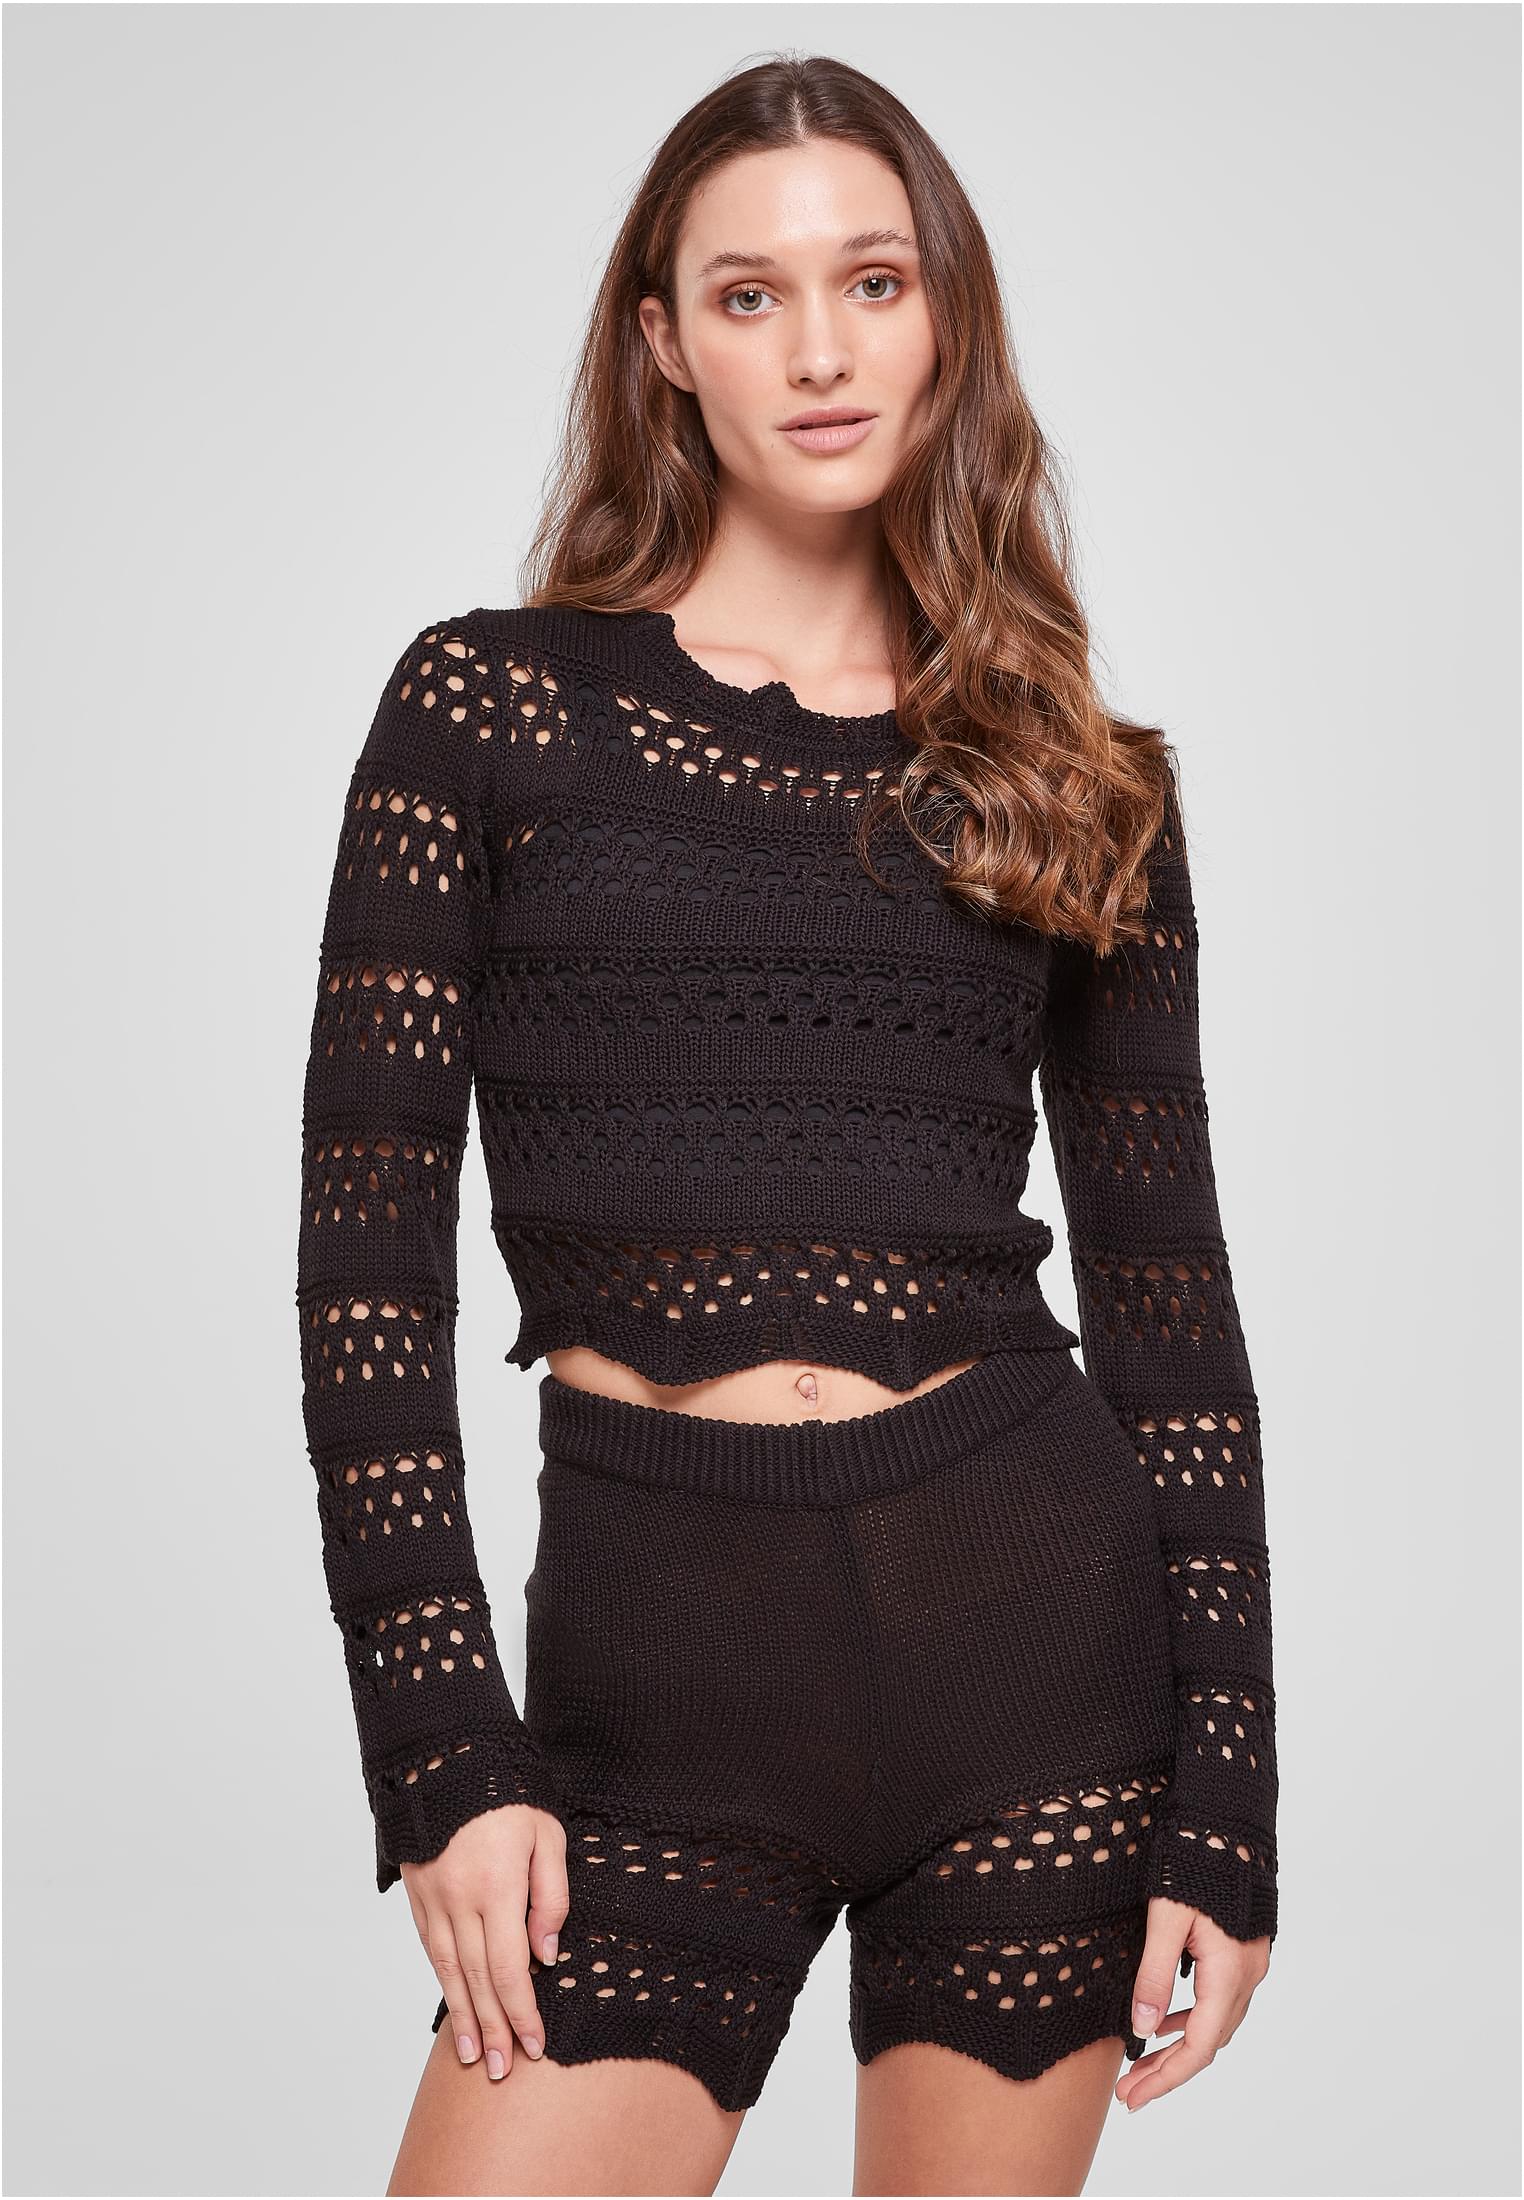 Women's crochet knitted sweater black